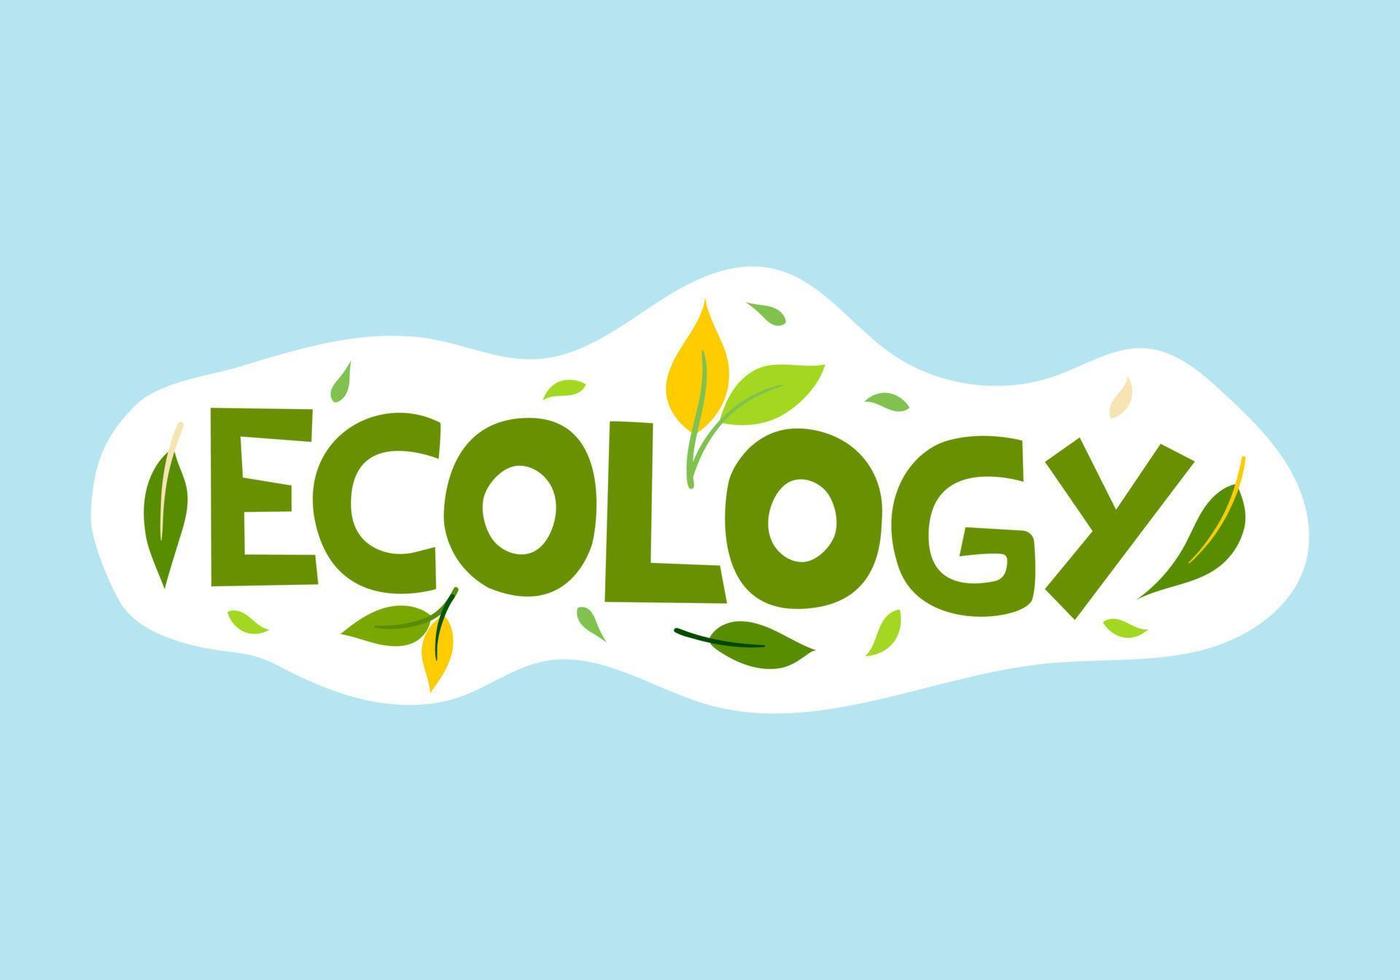 illustrazione vettoriale, ecologia con iscrizione verde con foglie su sfondo blu. protezione dell'ambiente e dell'ecologia vettore